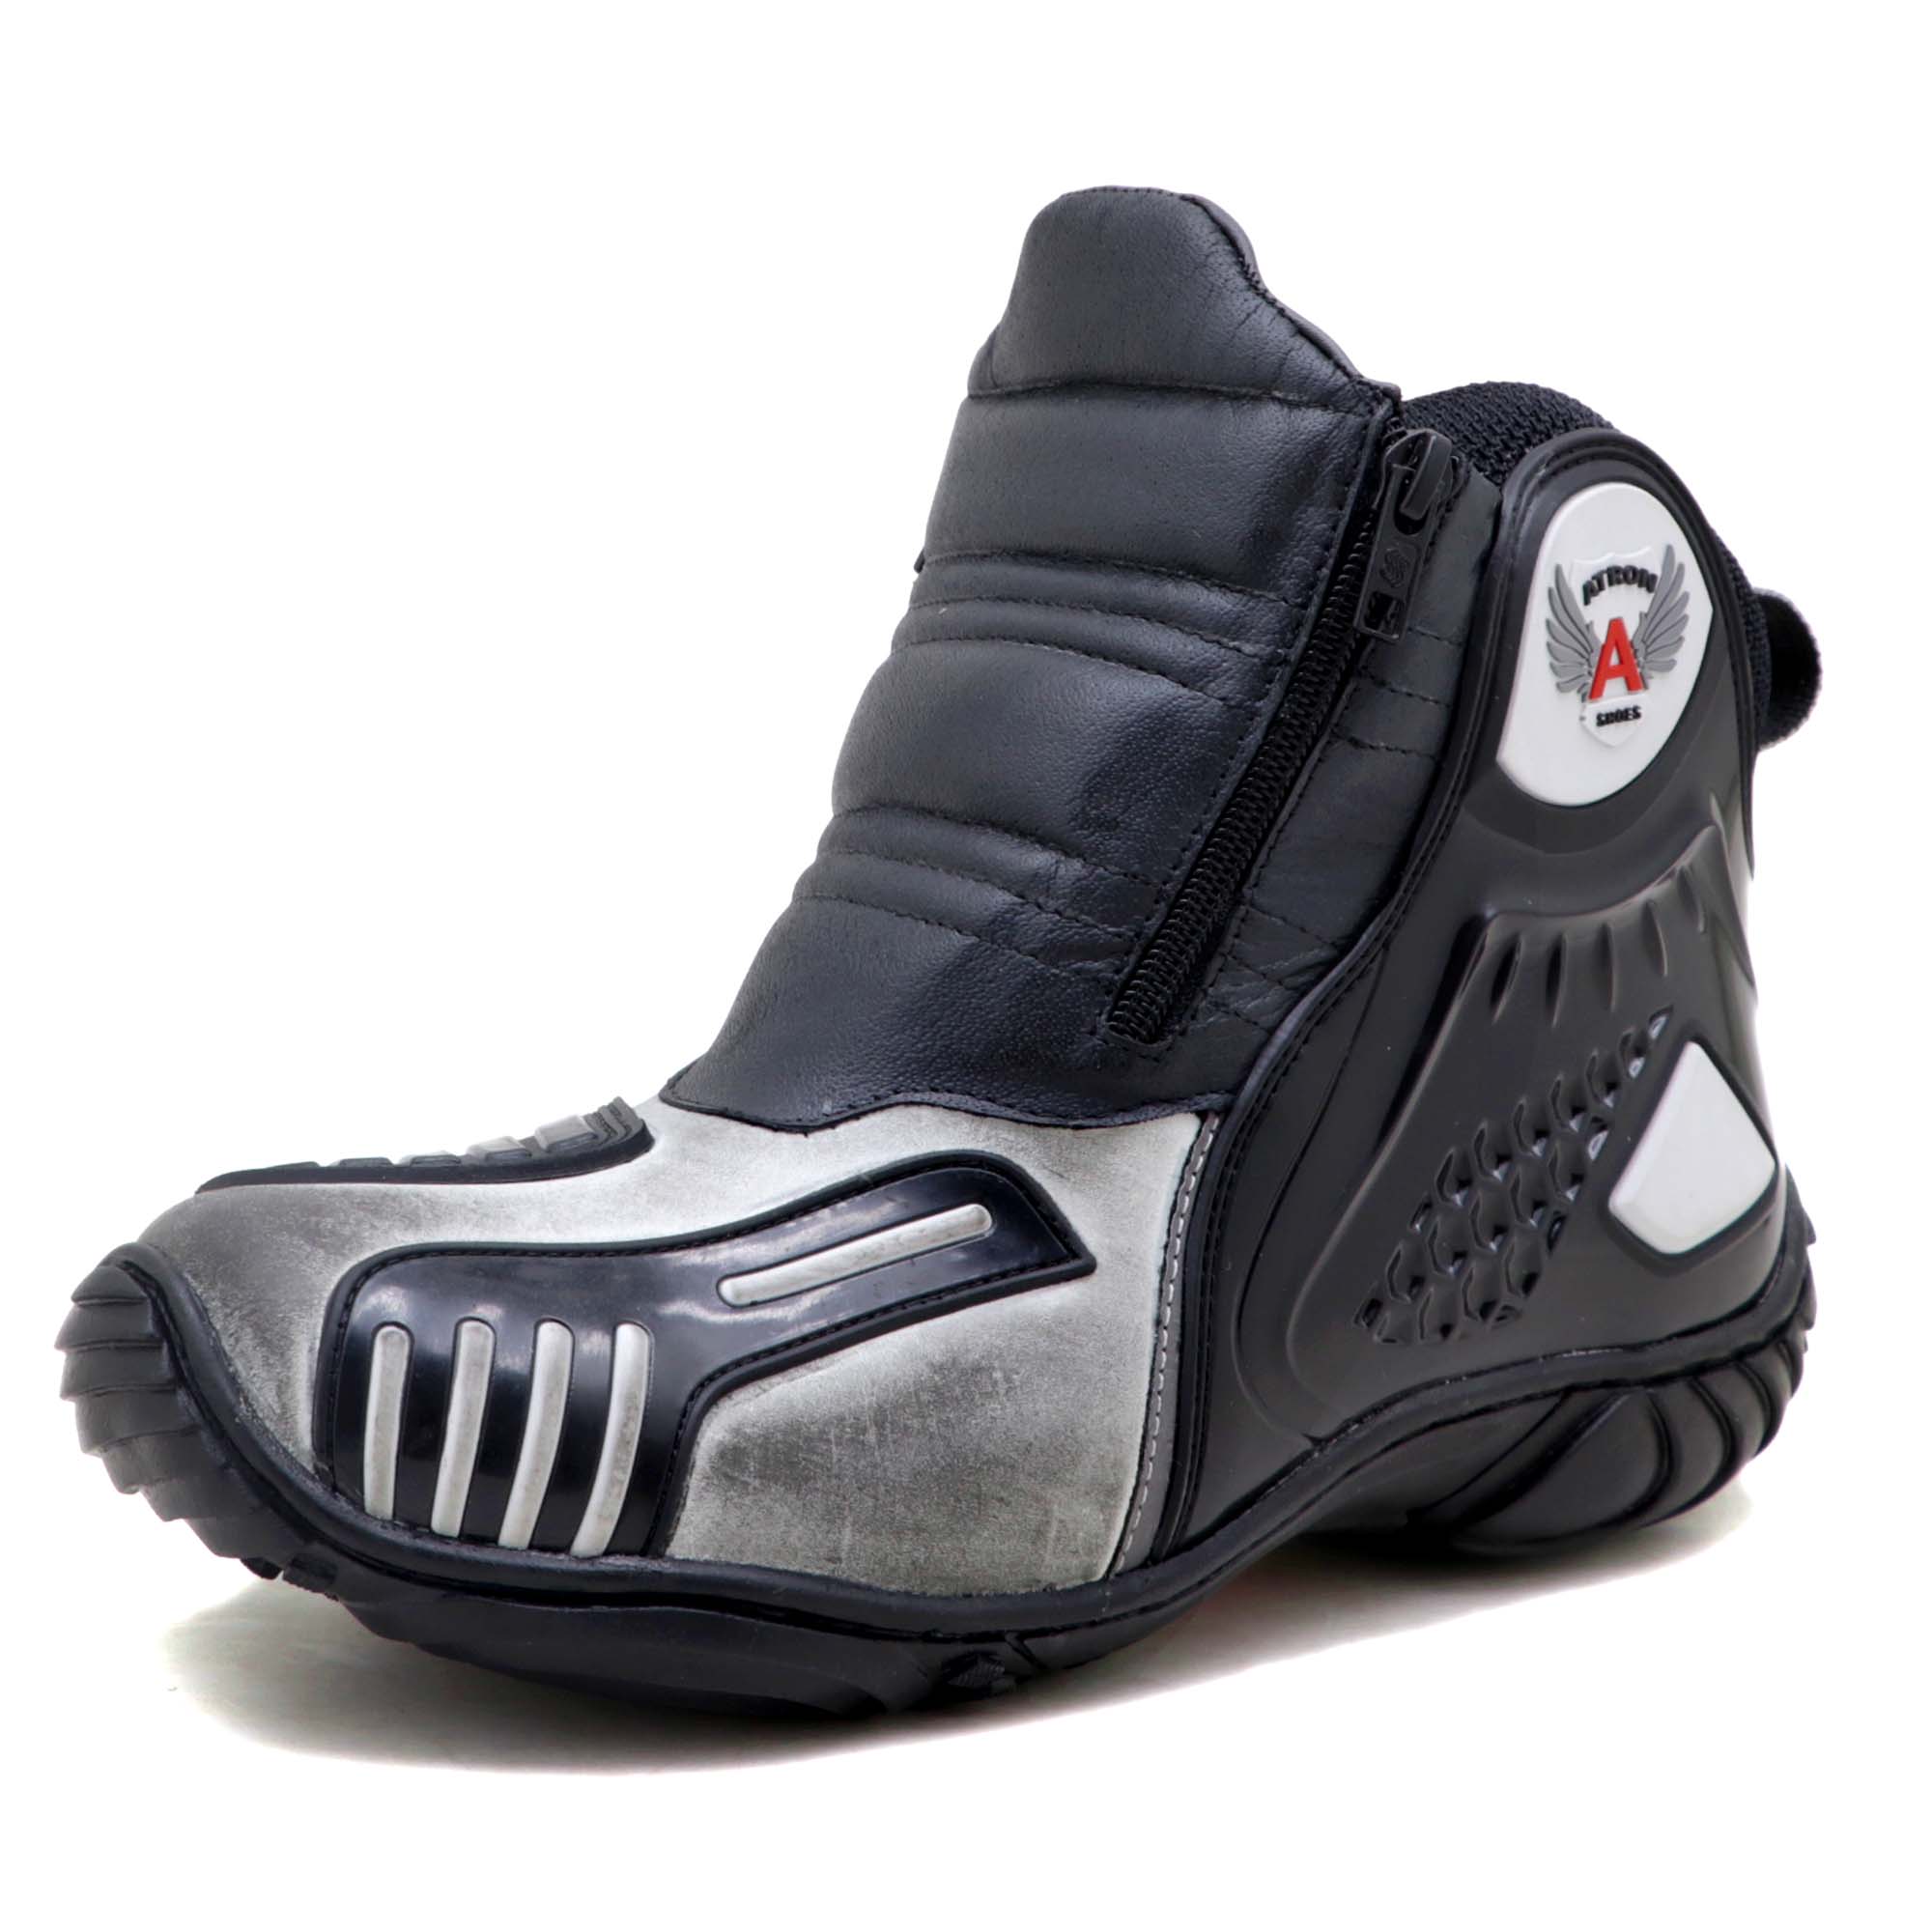 Bota motociclista Atron Shoes AS-HIGHWAY em couro legítimo semi-impermeável emborrachada na cor ASfalto 407